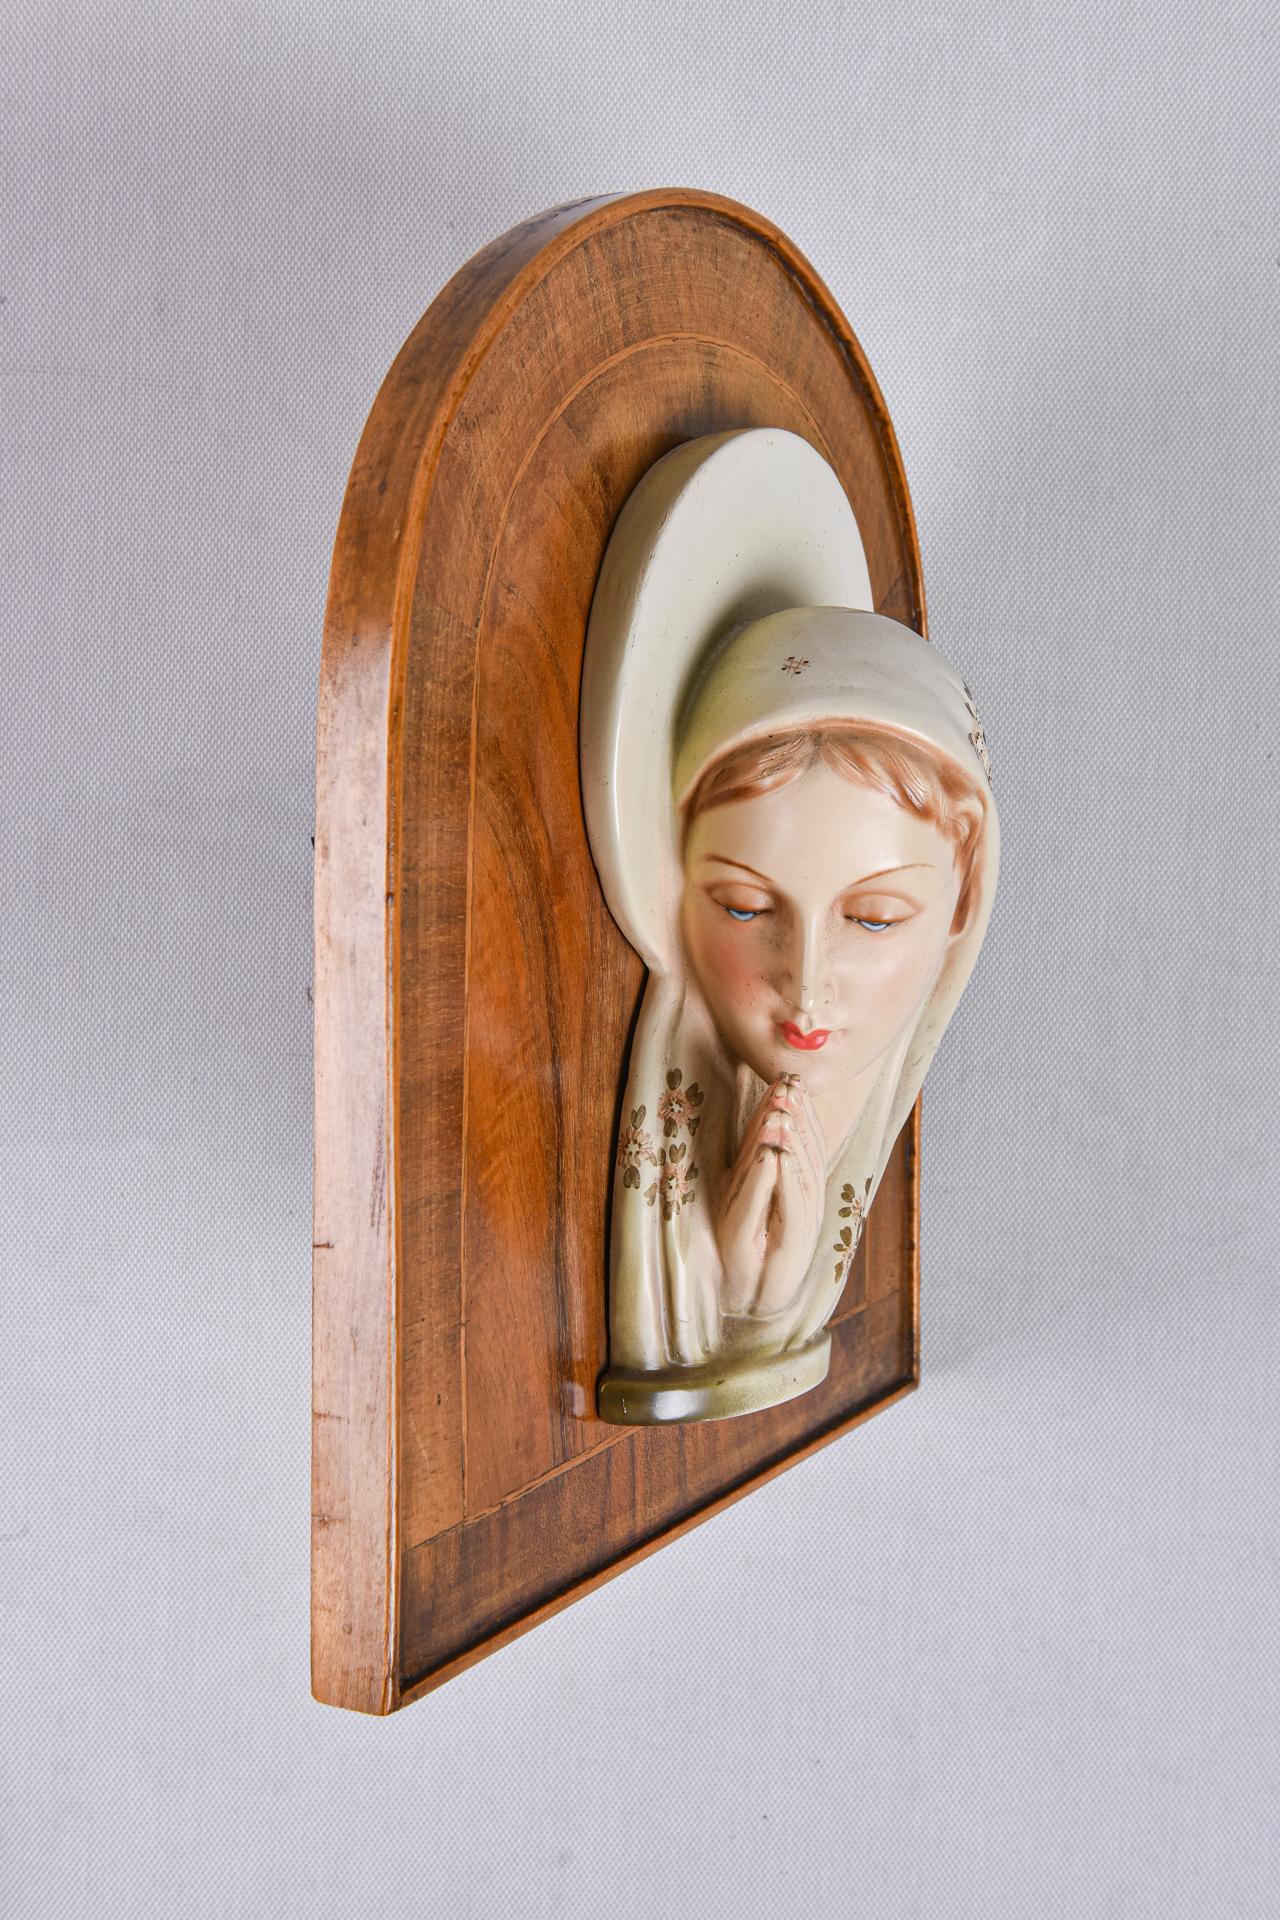 Madonna in keramischem Hoch- oder Flachrelief auf einem Holzpaneelsockel, aus der Déco-Zeit.  Auf den Schleier der Madonna sind kleine Blumen gemalt.
Es ist köstlich!